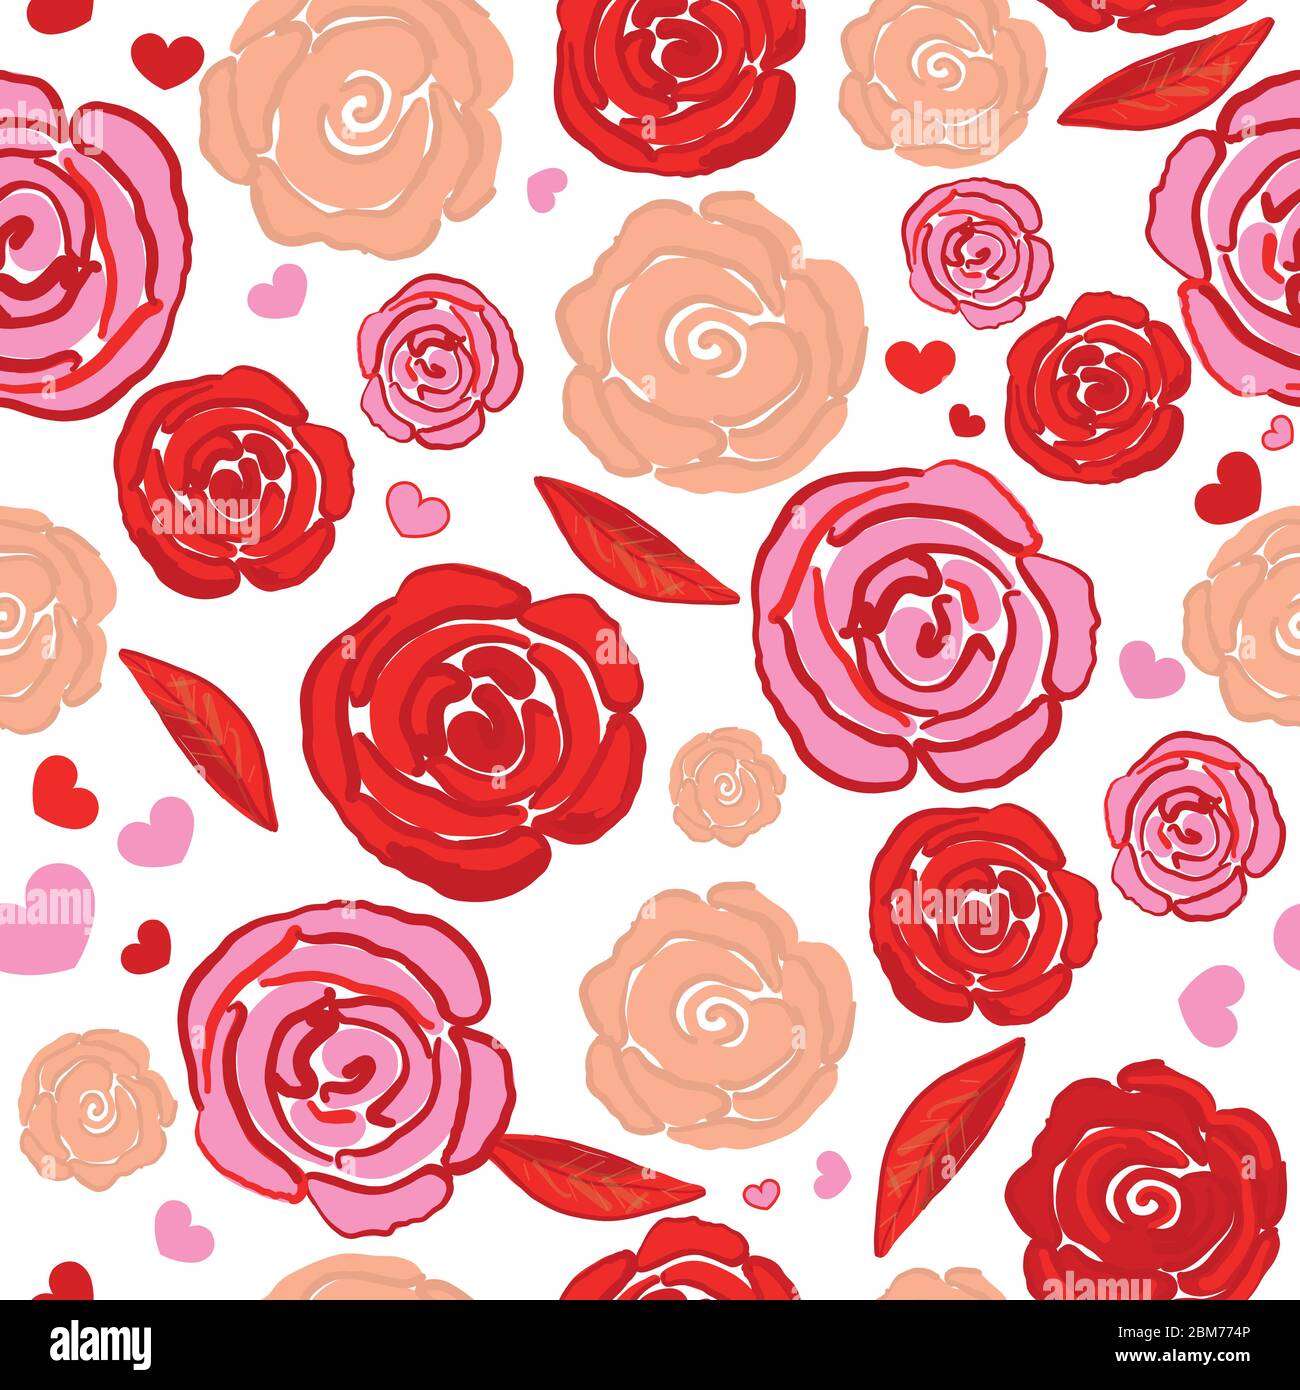 Nếu bạn yêu thích những hoa hồng xinh đẹp và tình yêu lãng mạn, hãy xem ngay hình nền hoa hồng đỏ hình vẽ tay kết hợp trái tim liên tục dễ thương này! Với những đóa hoa đỏ tươi được thể hiện bằng chất liệu tay, bạn sẽ cảm nhận được tình yêu và sự quan tâm đầy sâu sắc đối với bạn nhất!